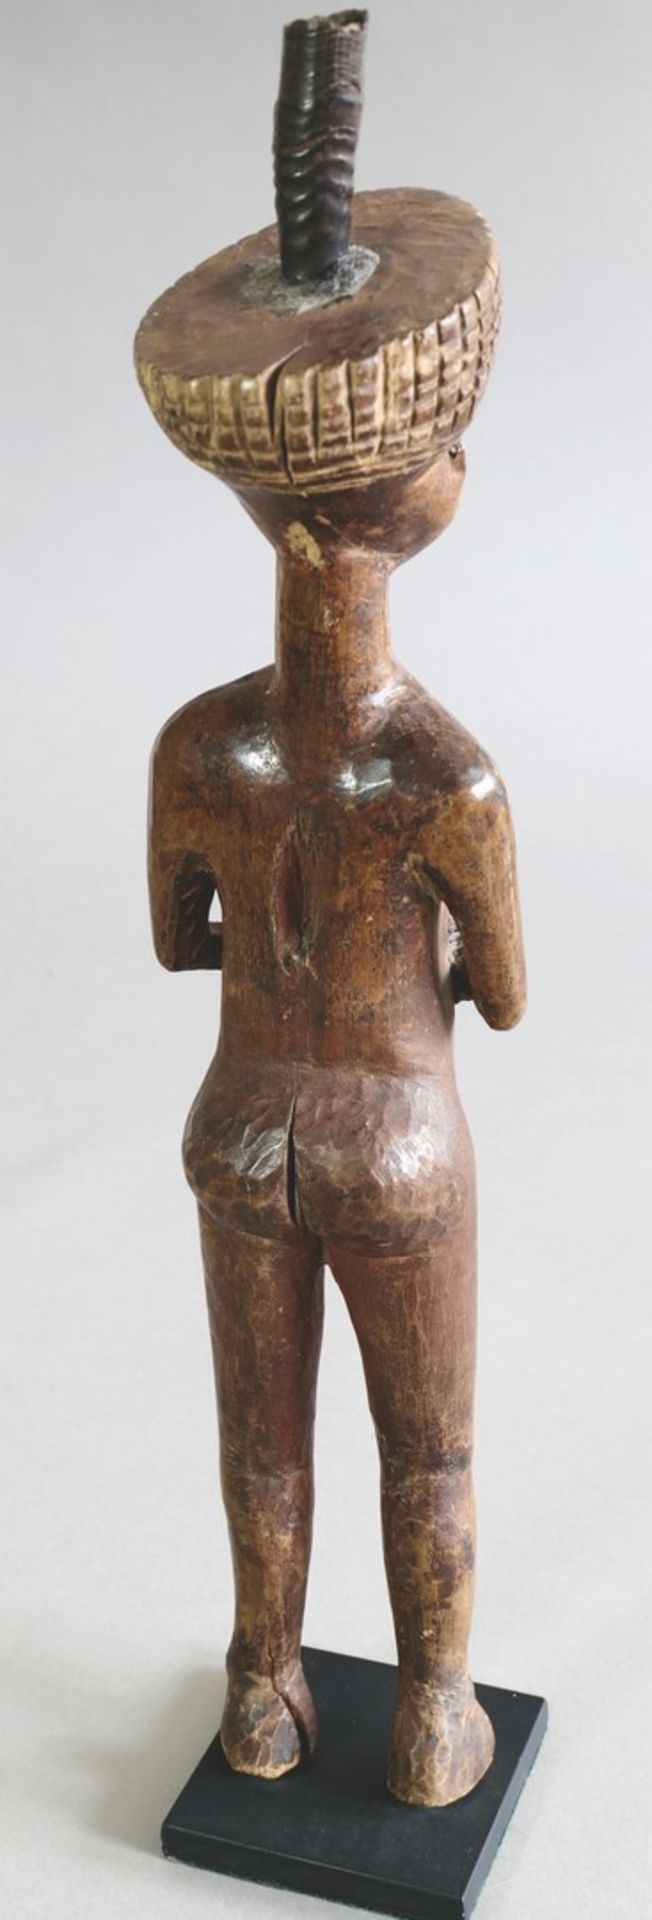 Fetisch FigurGokwe, Sambia/ SimbabweFetisch Figur. Gokwe, Sambia/ Simbabwe. Holz, geschnitzt, - Bild 3 aus 4